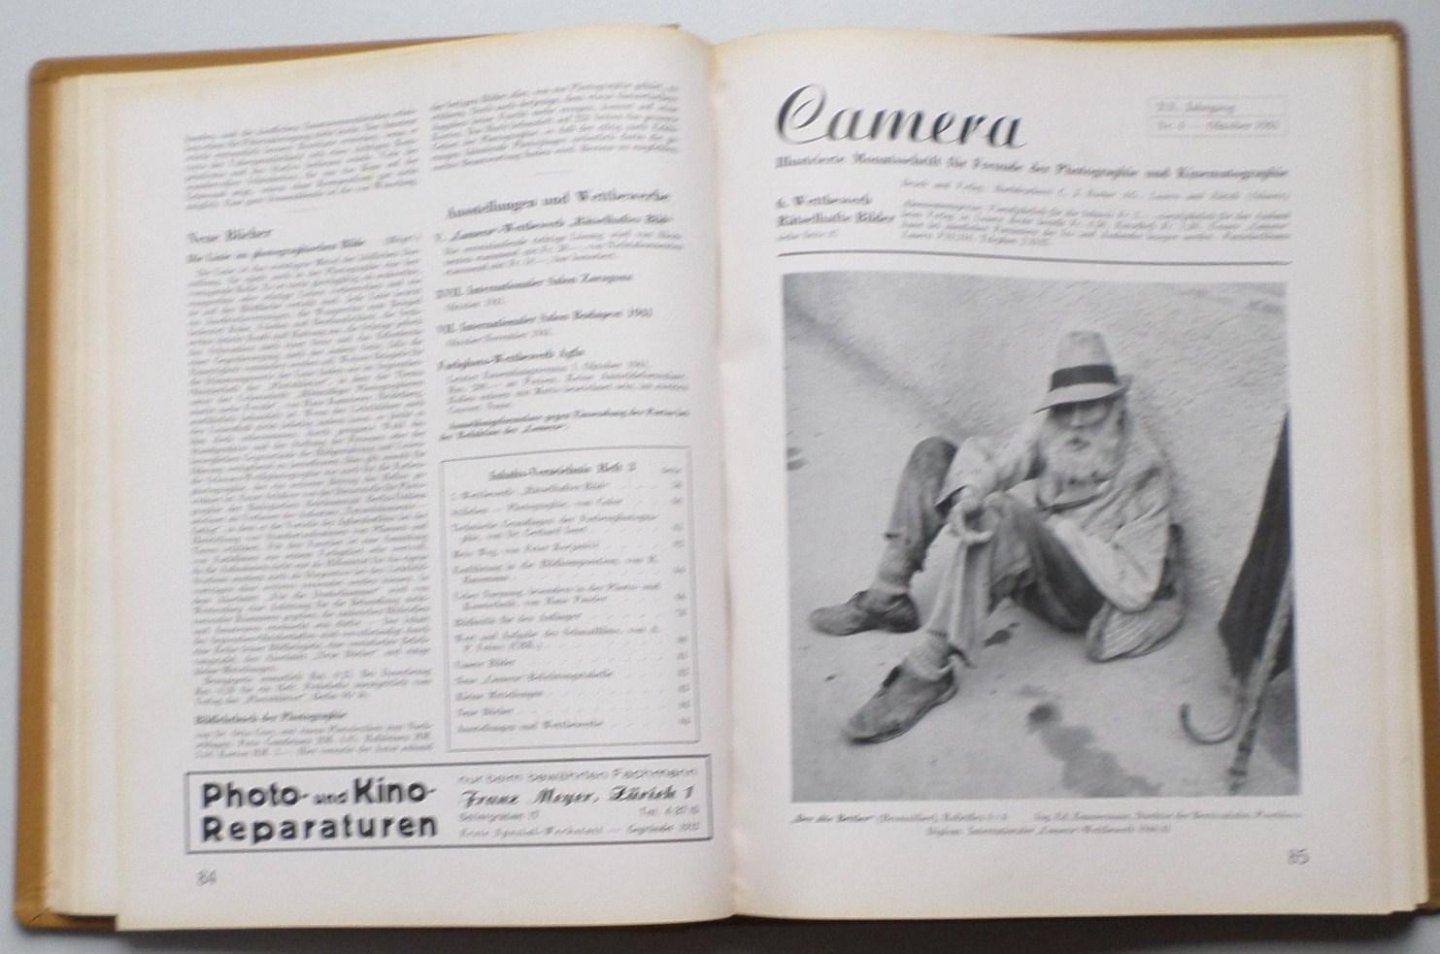 Bucher, C.J. - Camera, Illustrierte Monatsschrift für Freunde der Photographie und Kinematographie XX. Jahrgang 1941/42